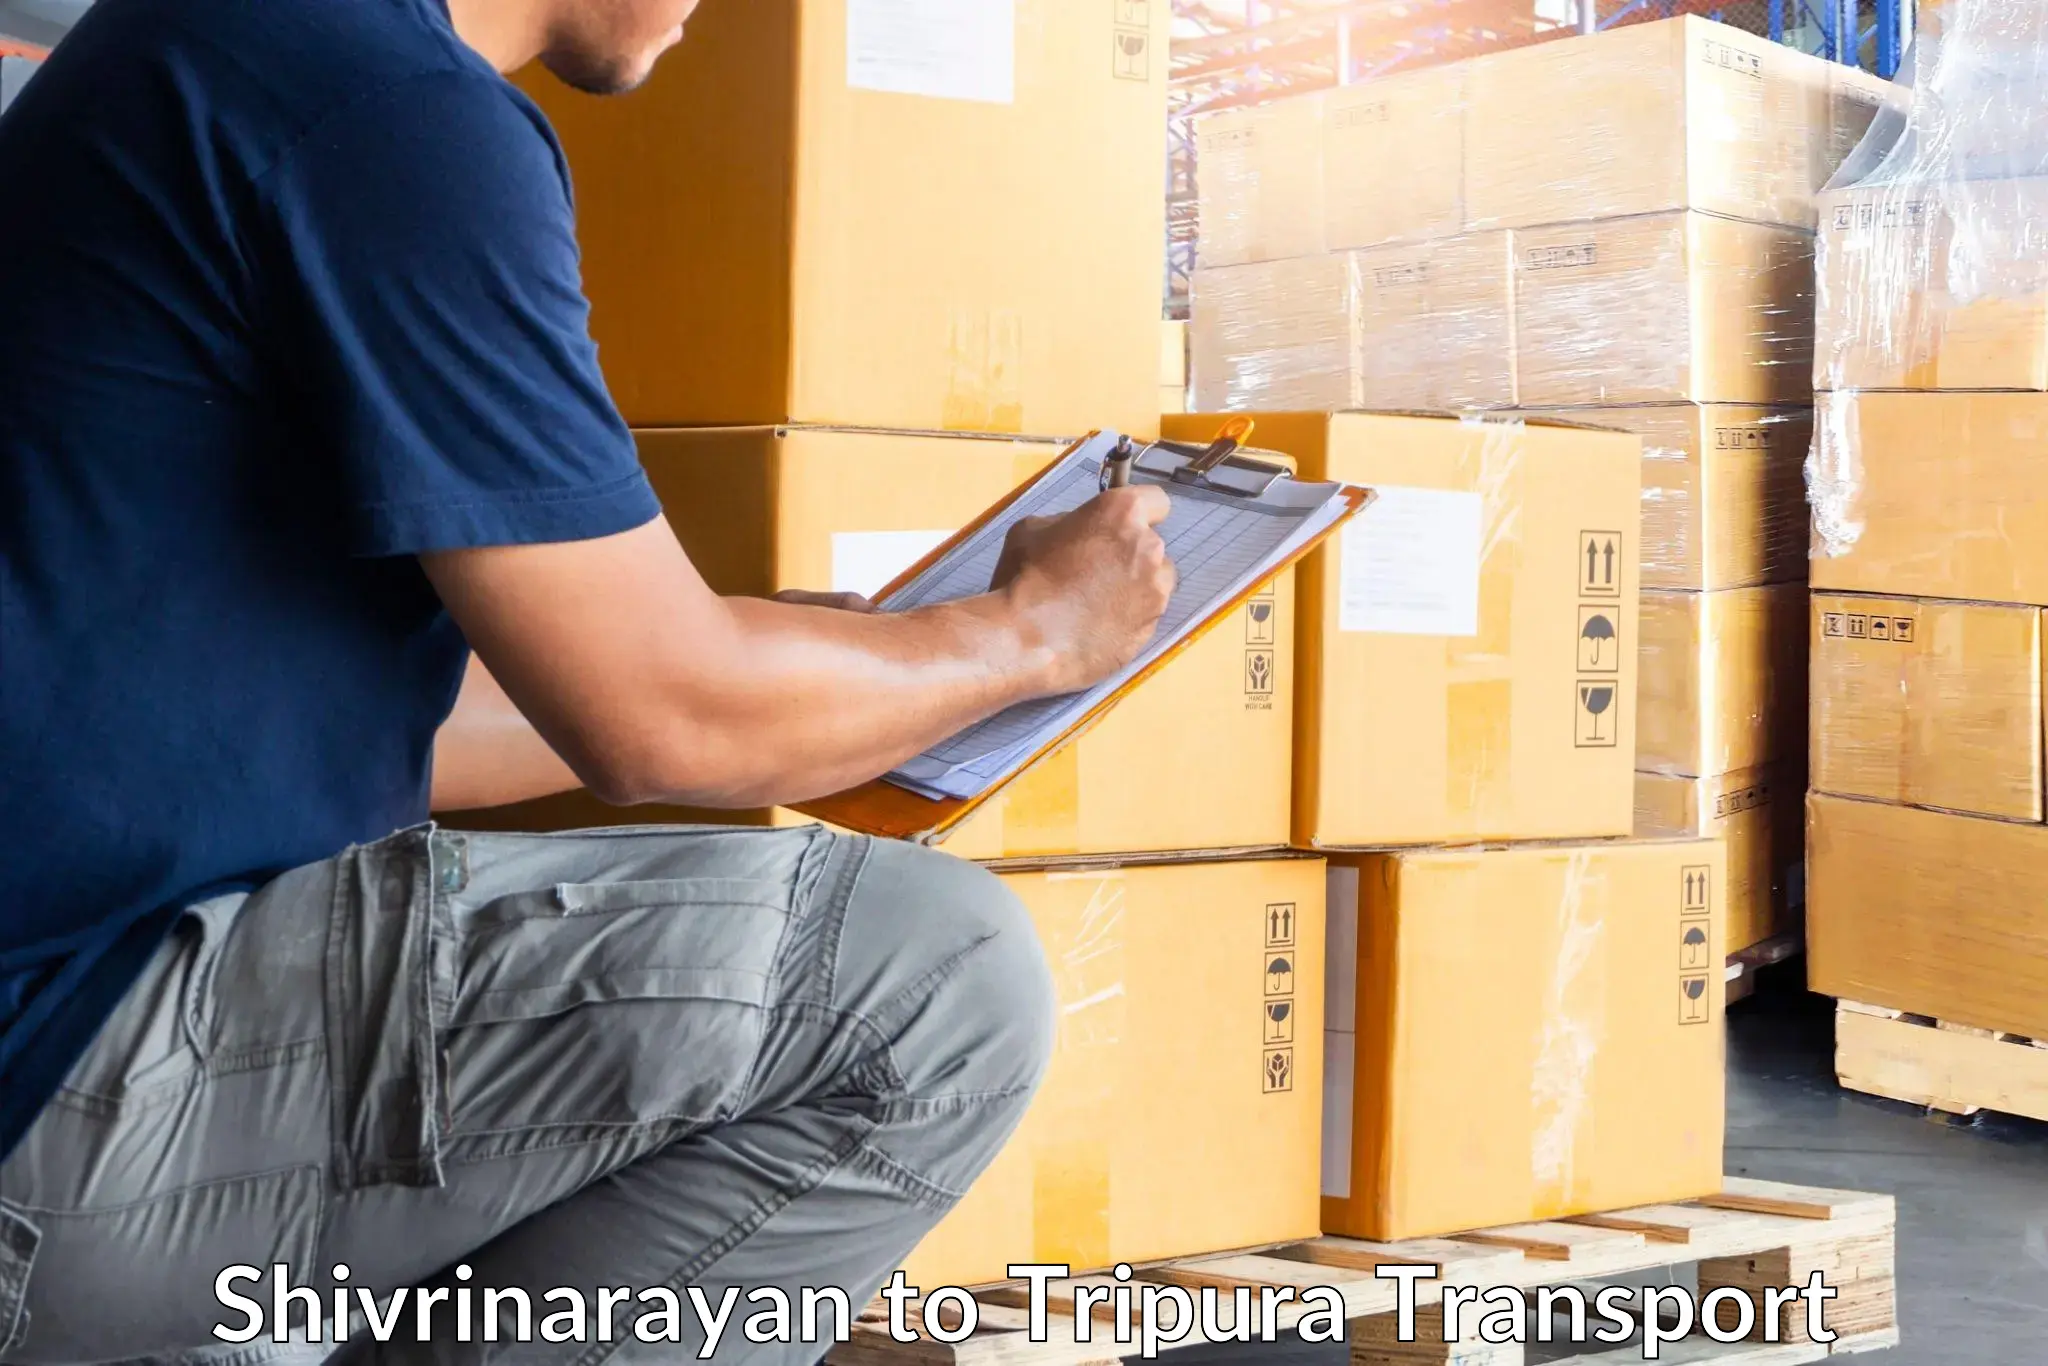 Daily parcel service transport Shivrinarayan to Kailashahar